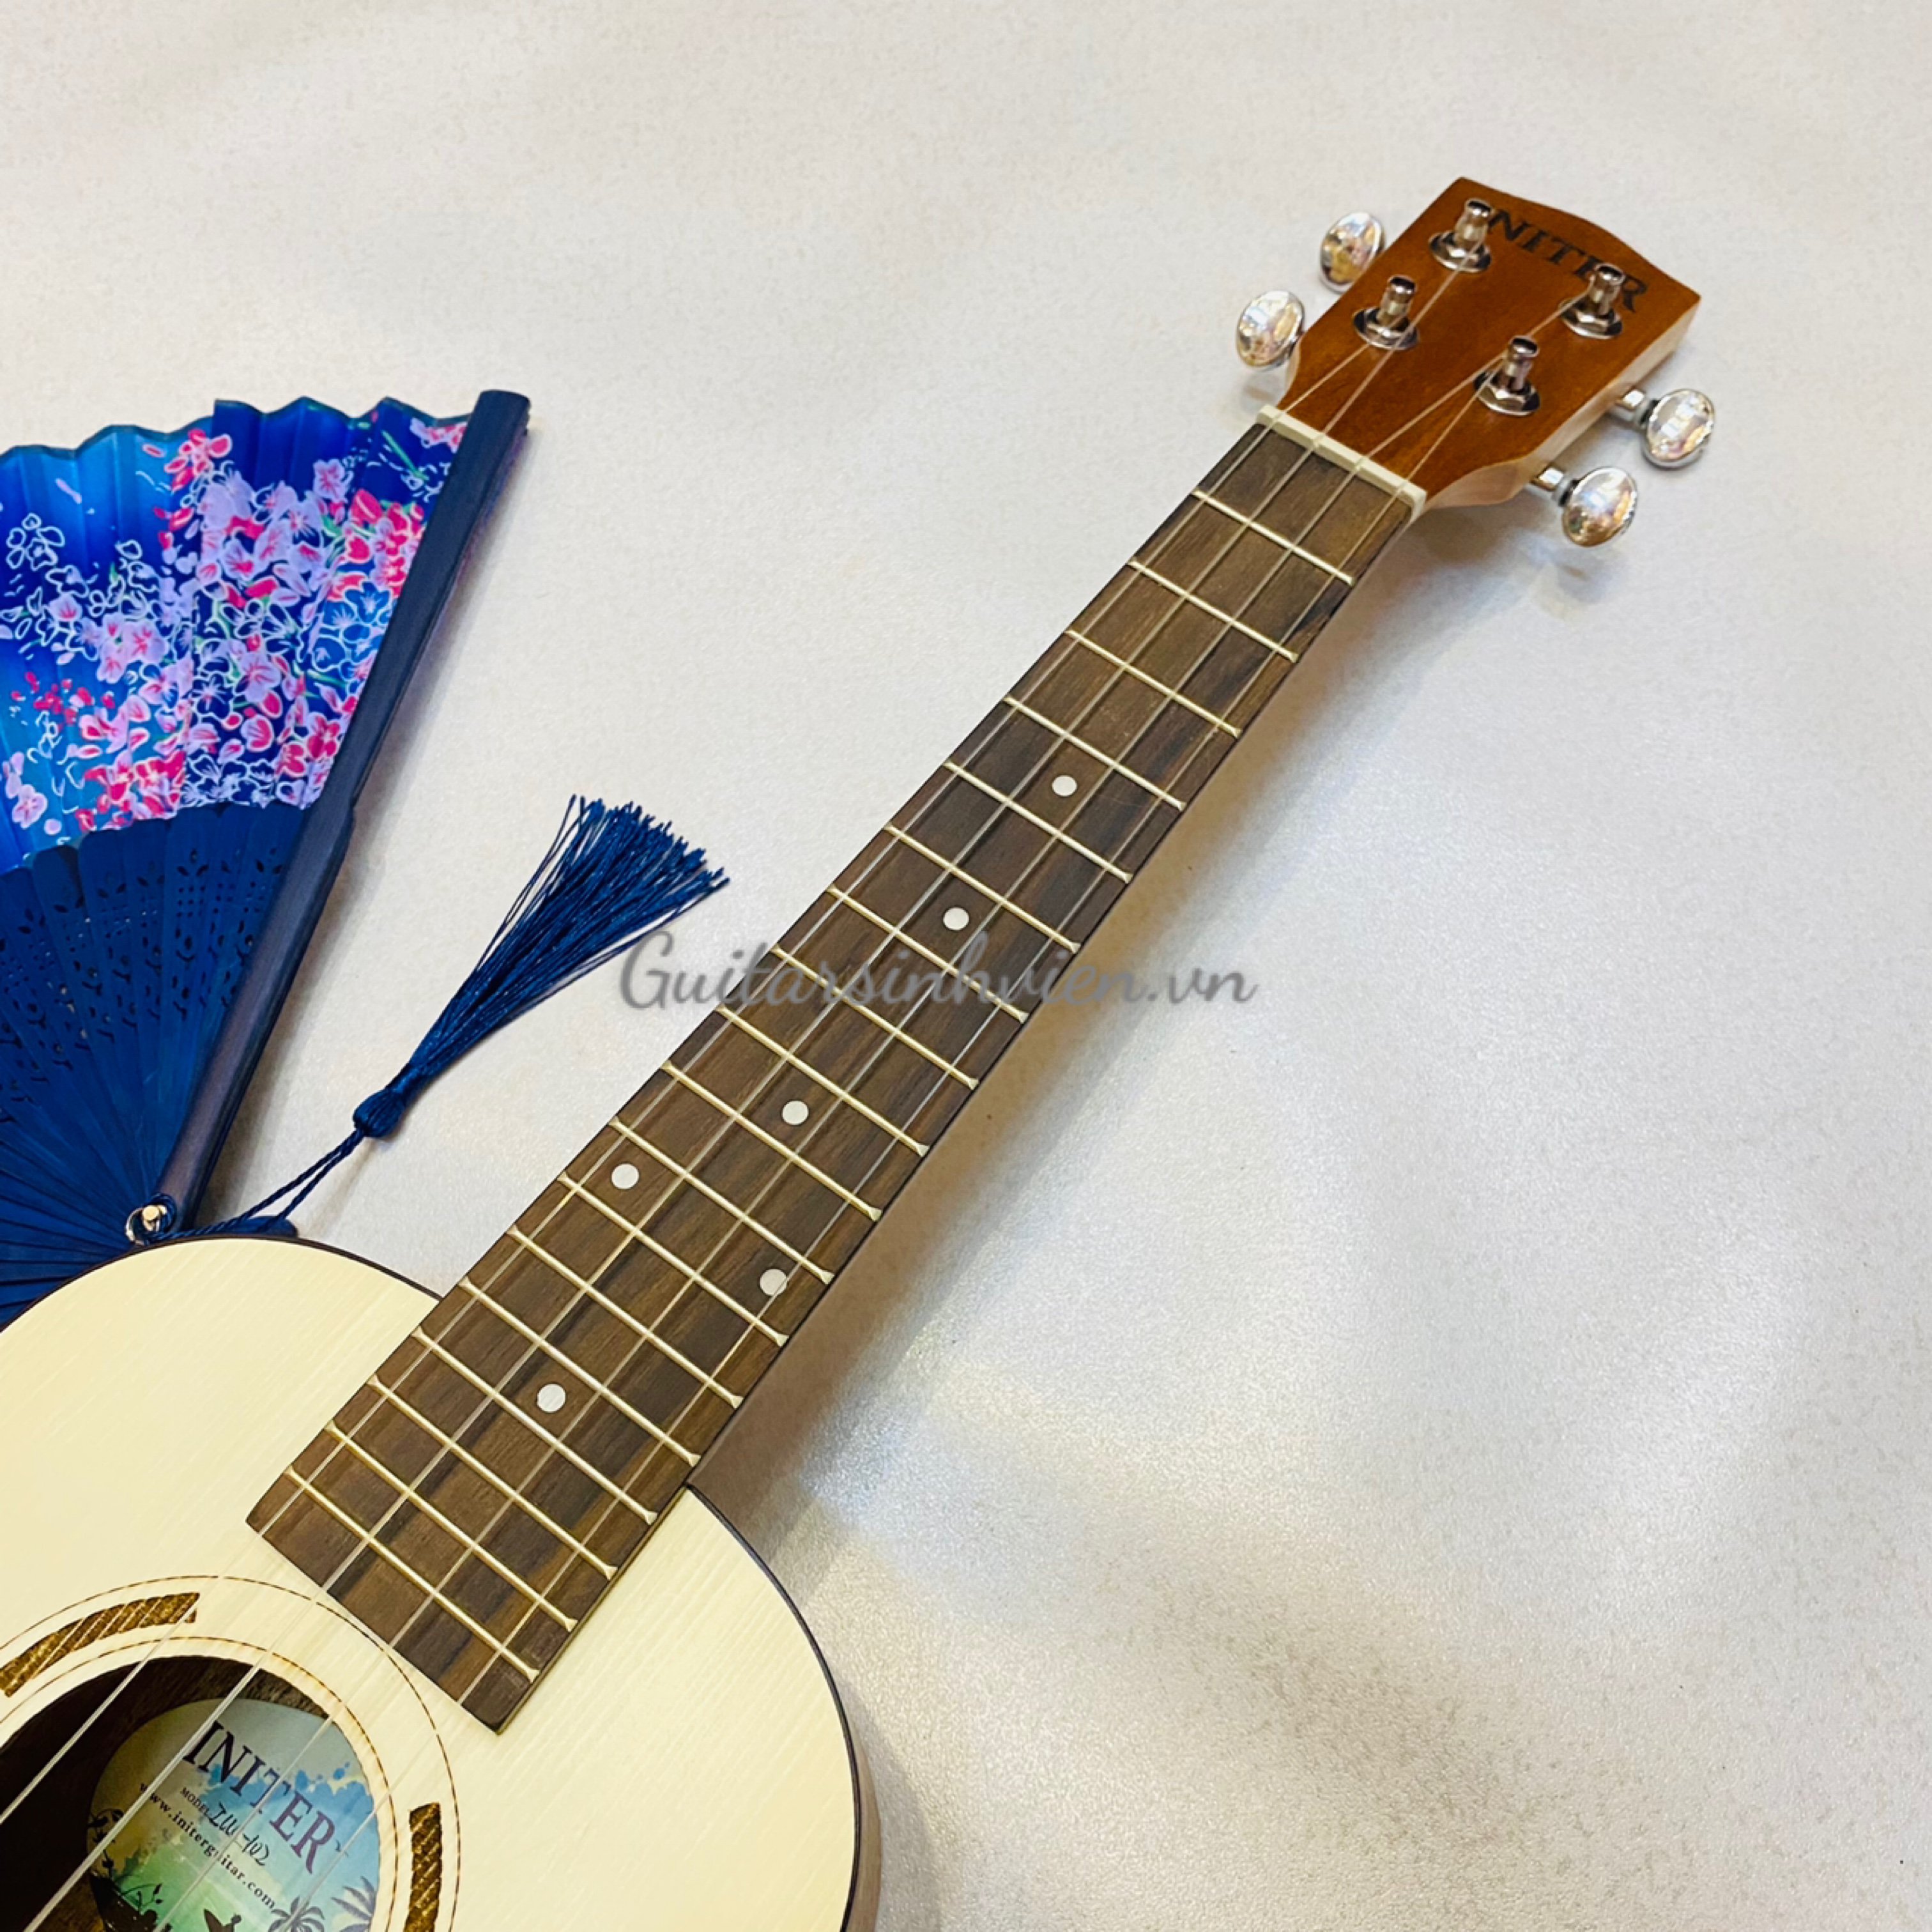 Đàn ukulele gỗ mahogany size concert giá rẻ tại HCM